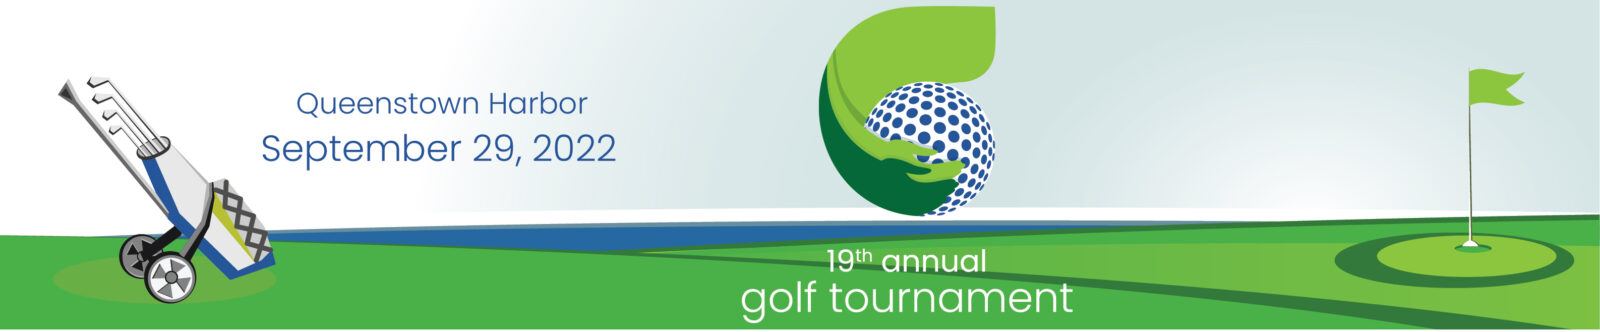 Annual Golf Tournament - Thursday, September 29, 2022 